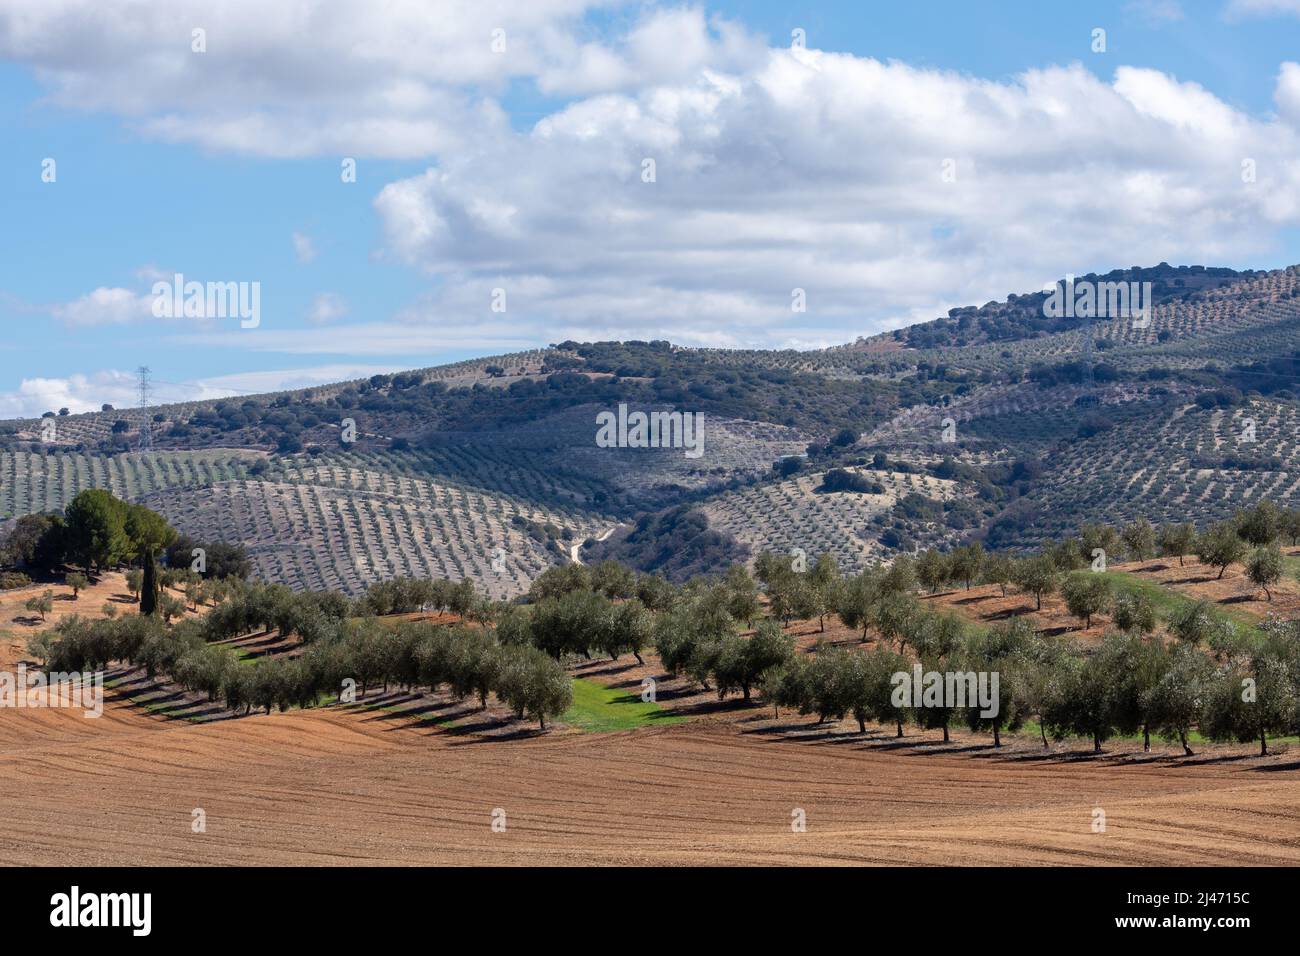 Blick auf große landwirtschaftliche Flächen von Olivenbäumen in der andalusischen Landschaft (Spanien) Stockfoto